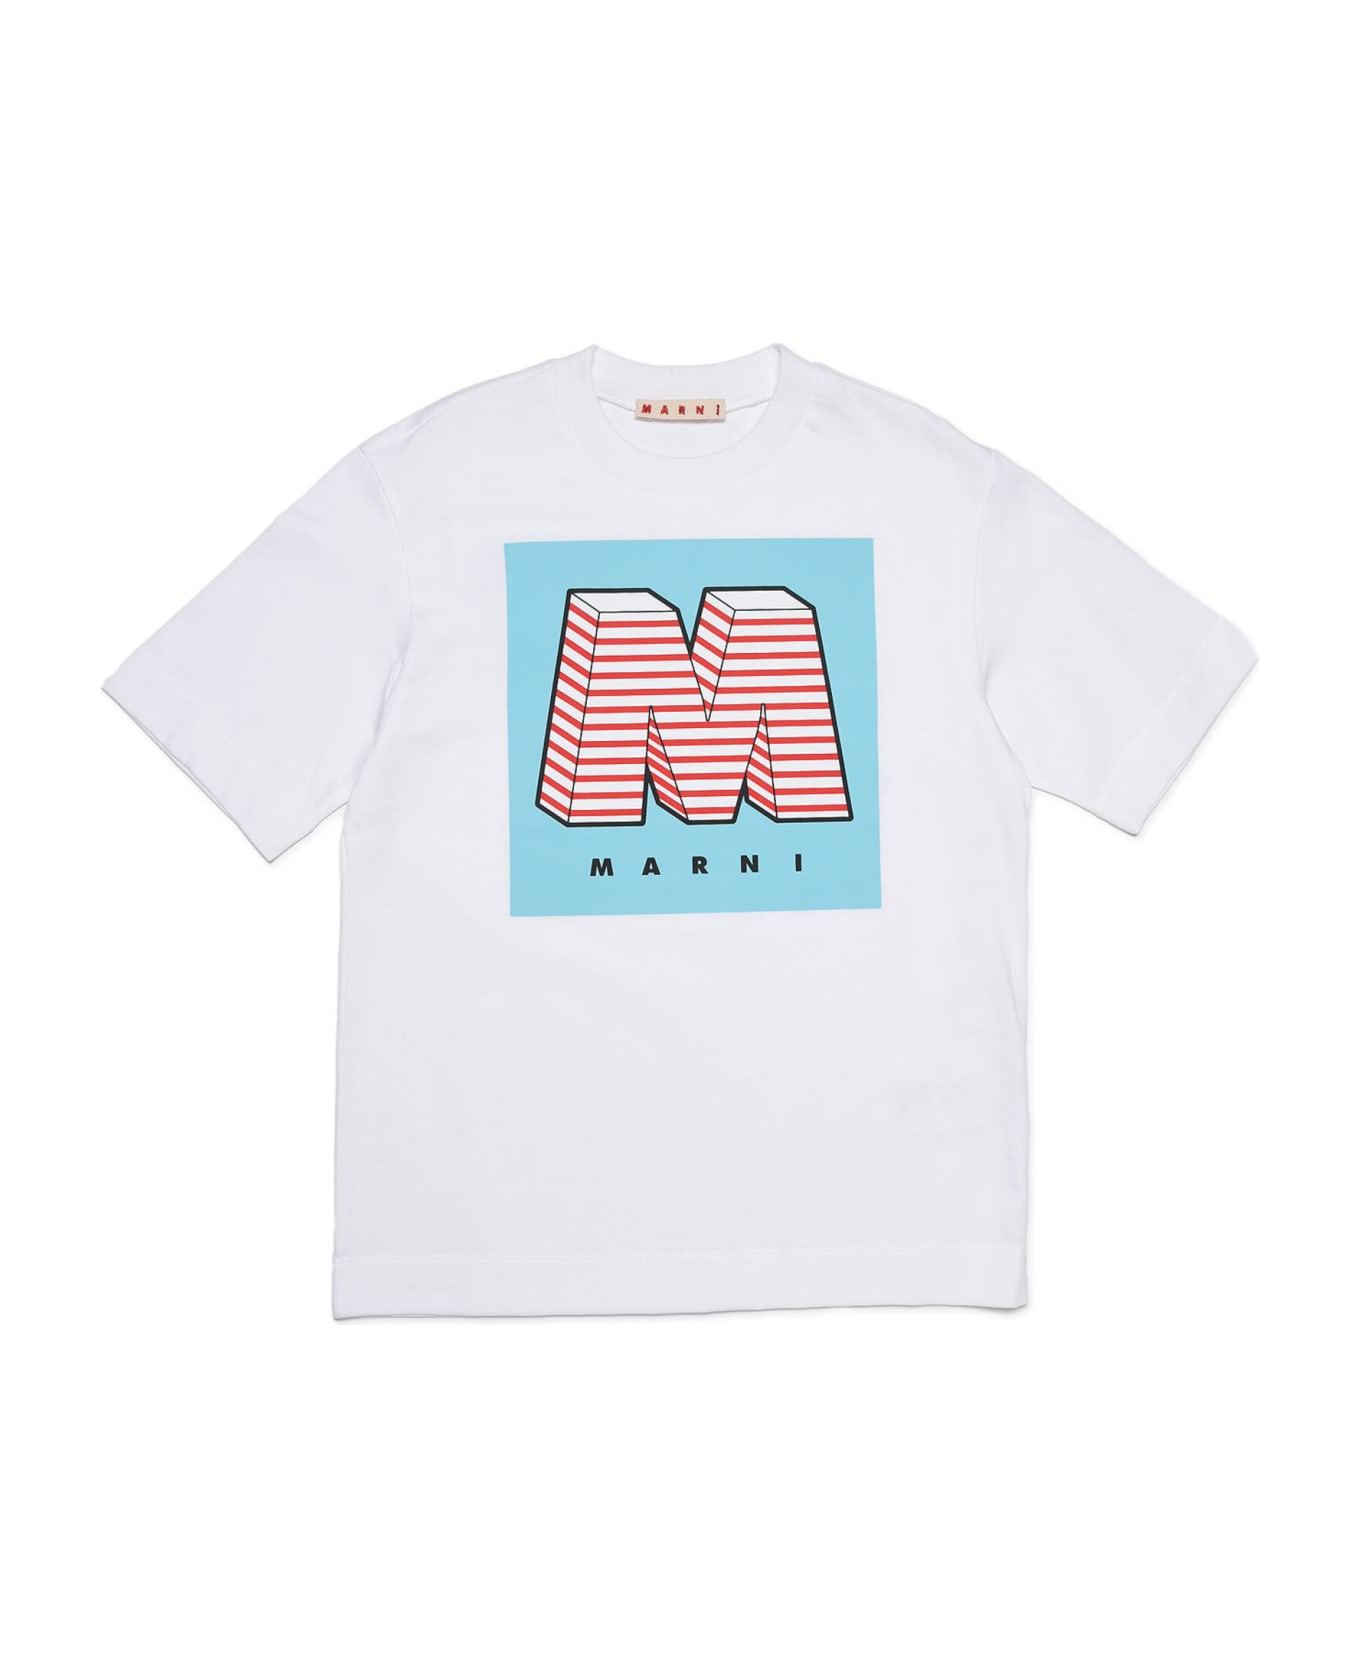 Marni Mt142u T-shirt Marni - White